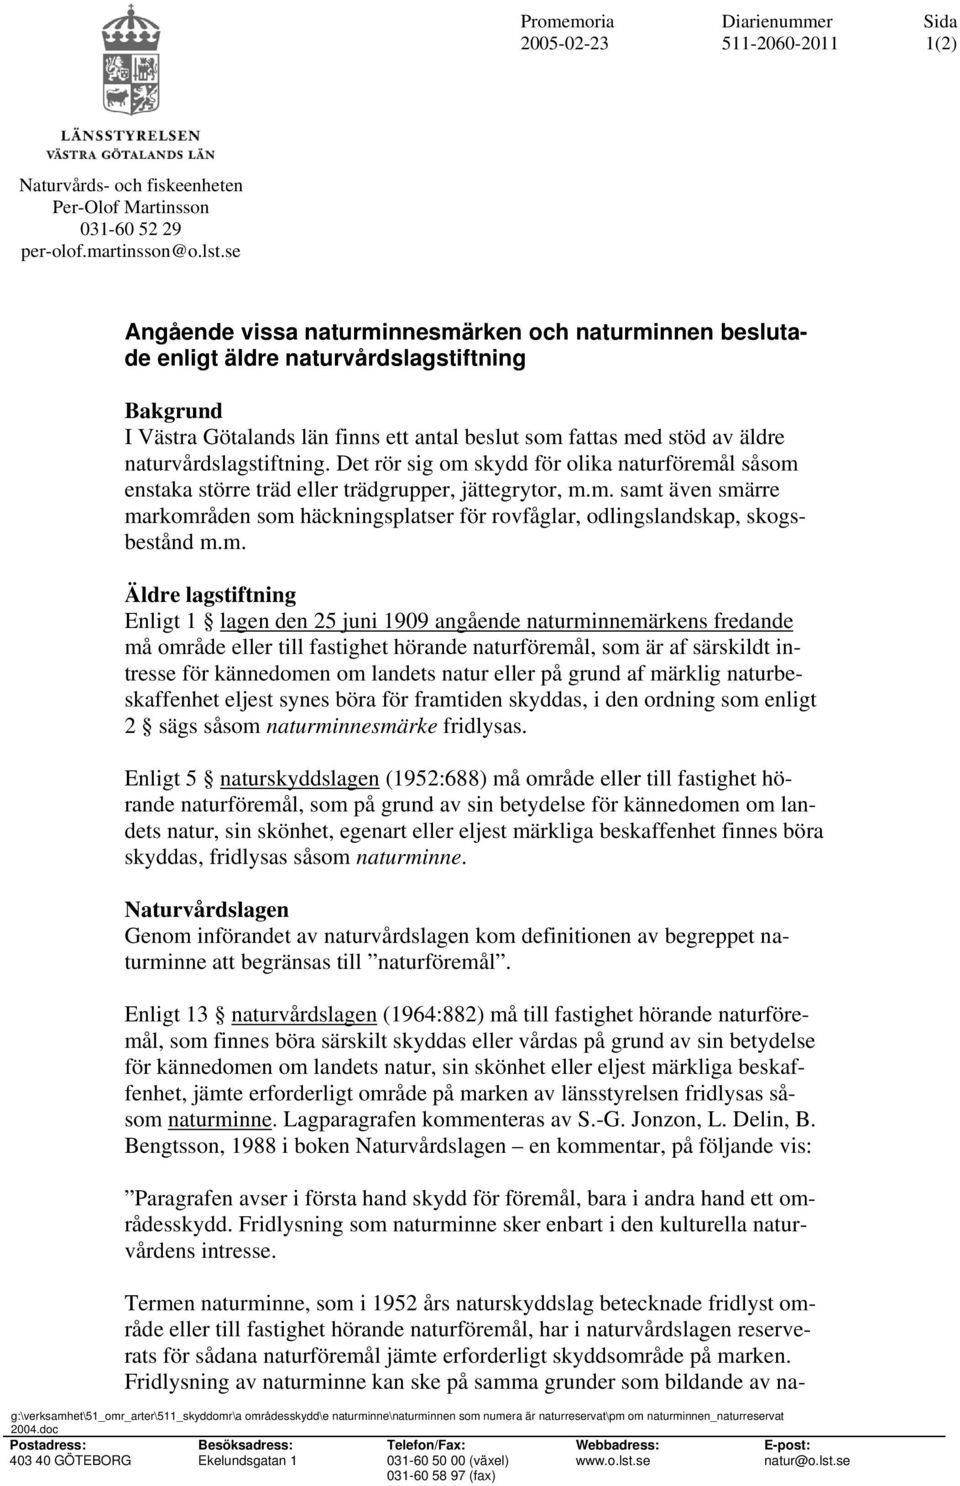 doc Postadress: 403 40 GÖTEBORG Angående vissa naturminnesmärken och naturminnen beslutade enligt äldre naturvårdslagstiftning Bakgrund I Västra Götalands län finns ett antal beslut som fattas med